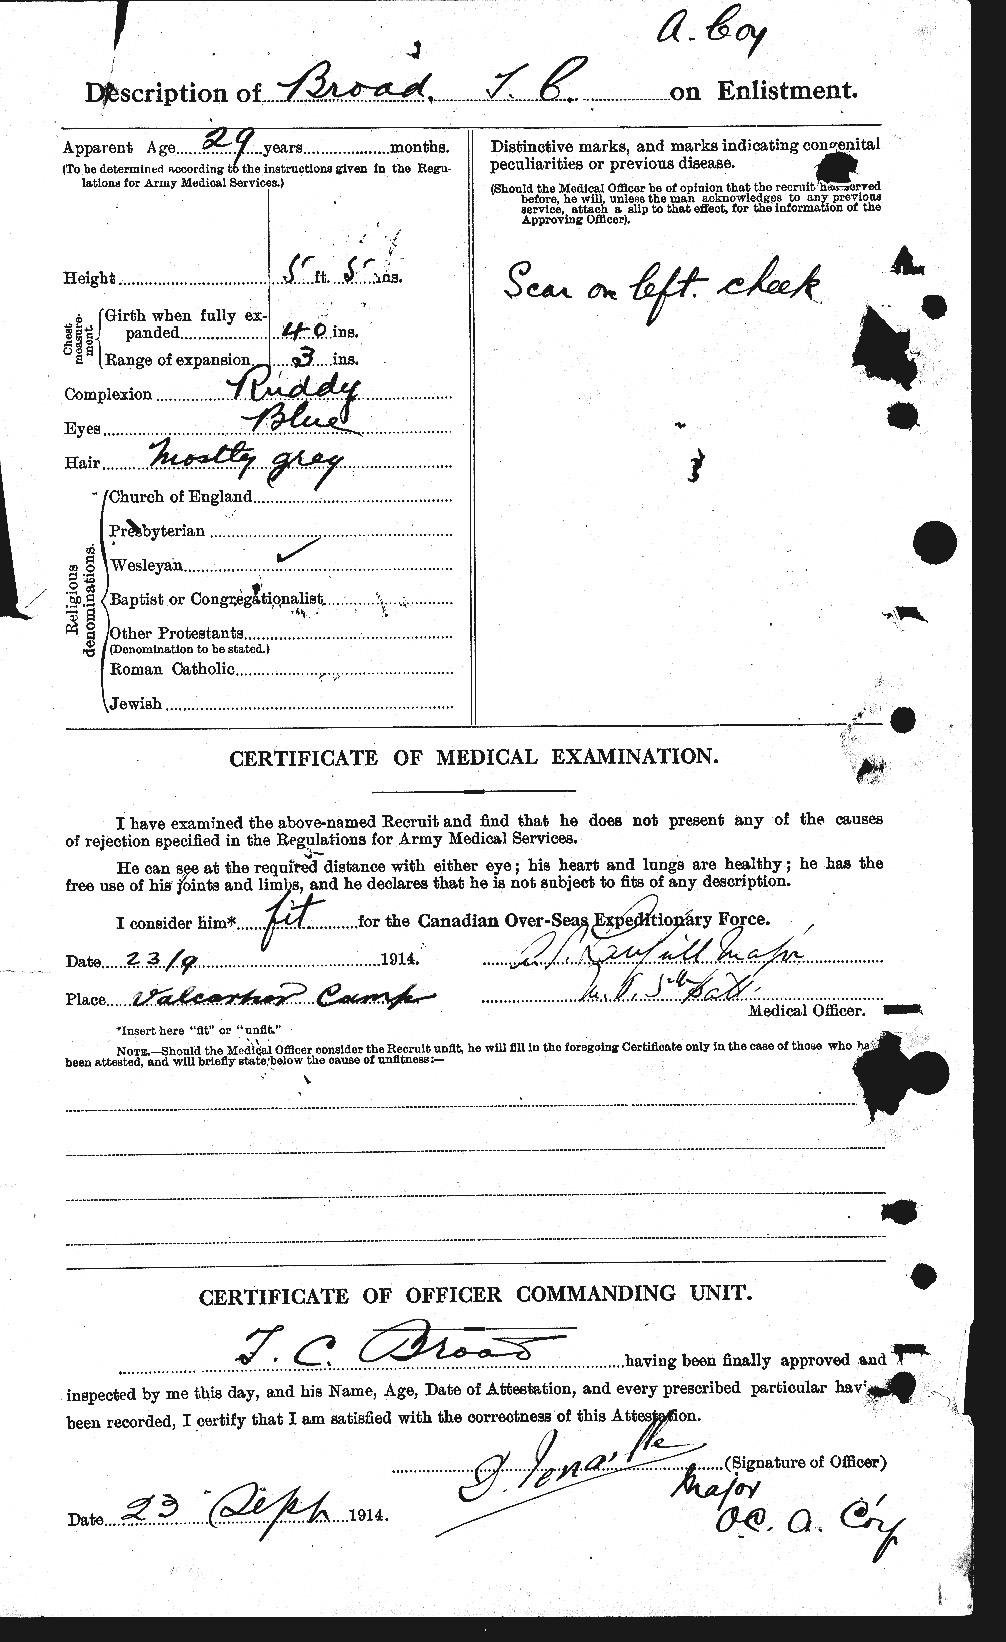 Dossiers du Personnel de la Première Guerre mondiale - CEC 262924b